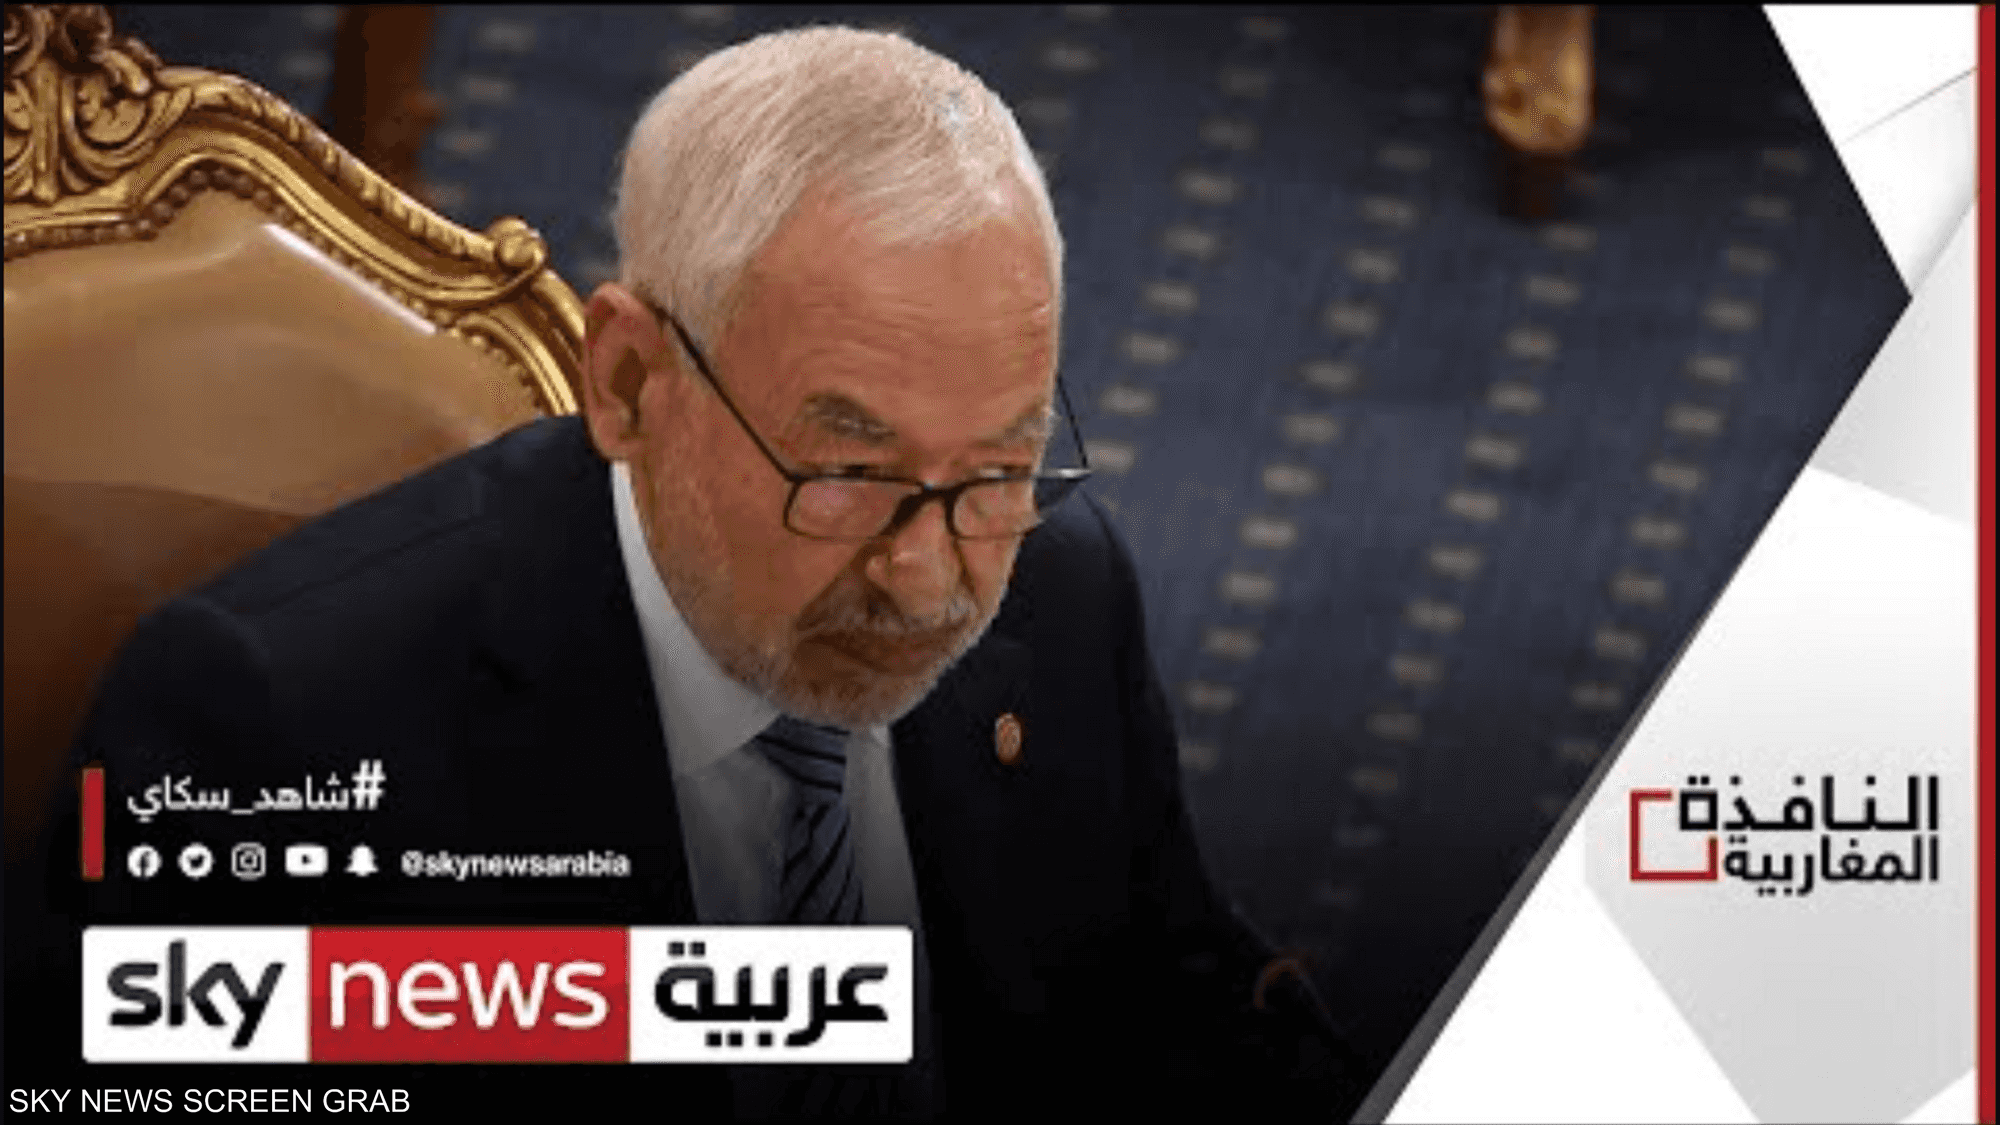 سحب الثقة من رئيس البرلمان التونسي راشد الغنوشي